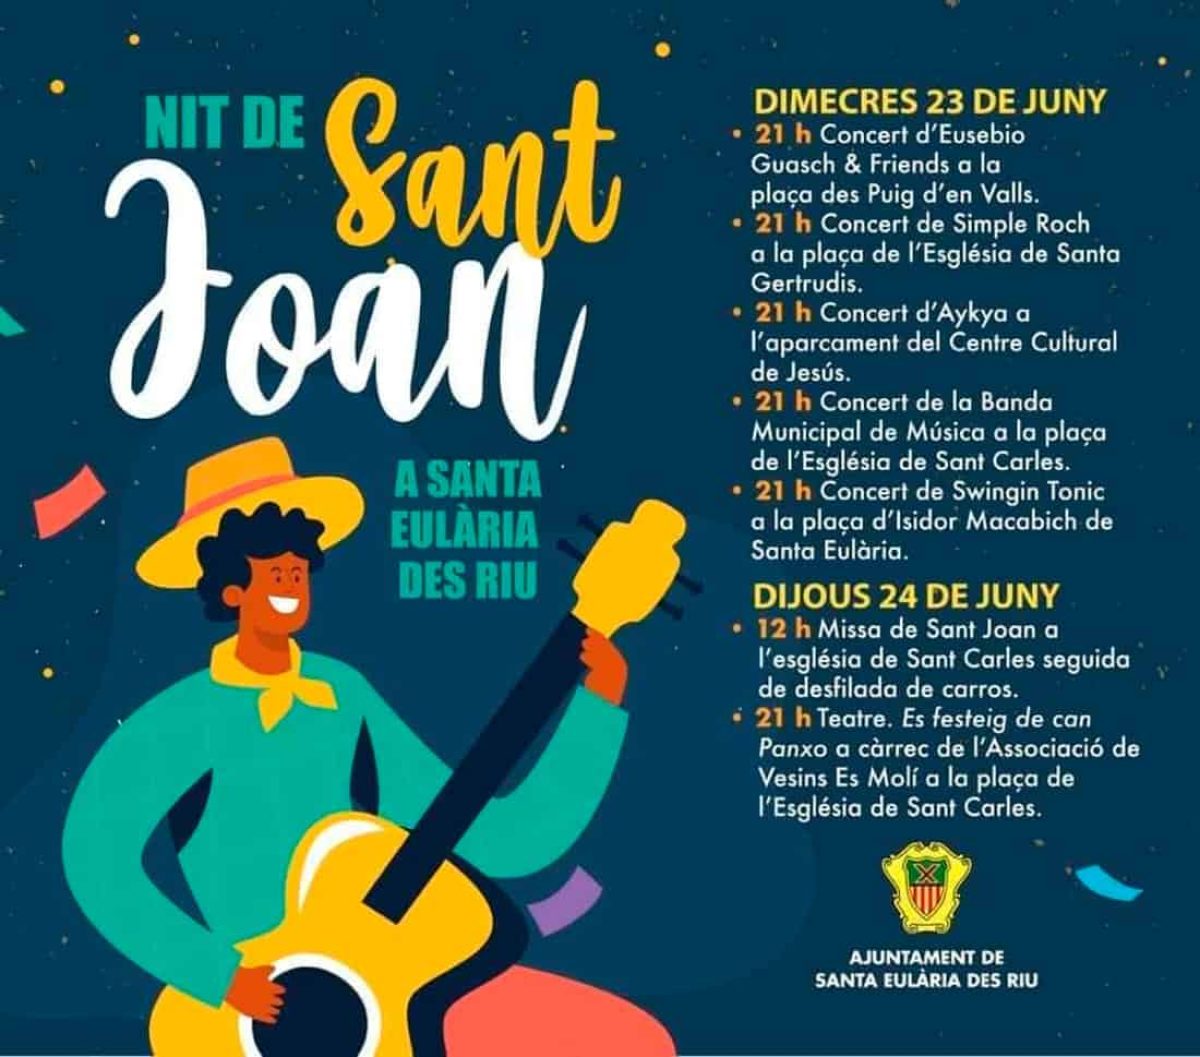 nacht-von-san-juan-nit-de-sant-joan-santa-eulalia-ibiza-2021-welcometoibiza